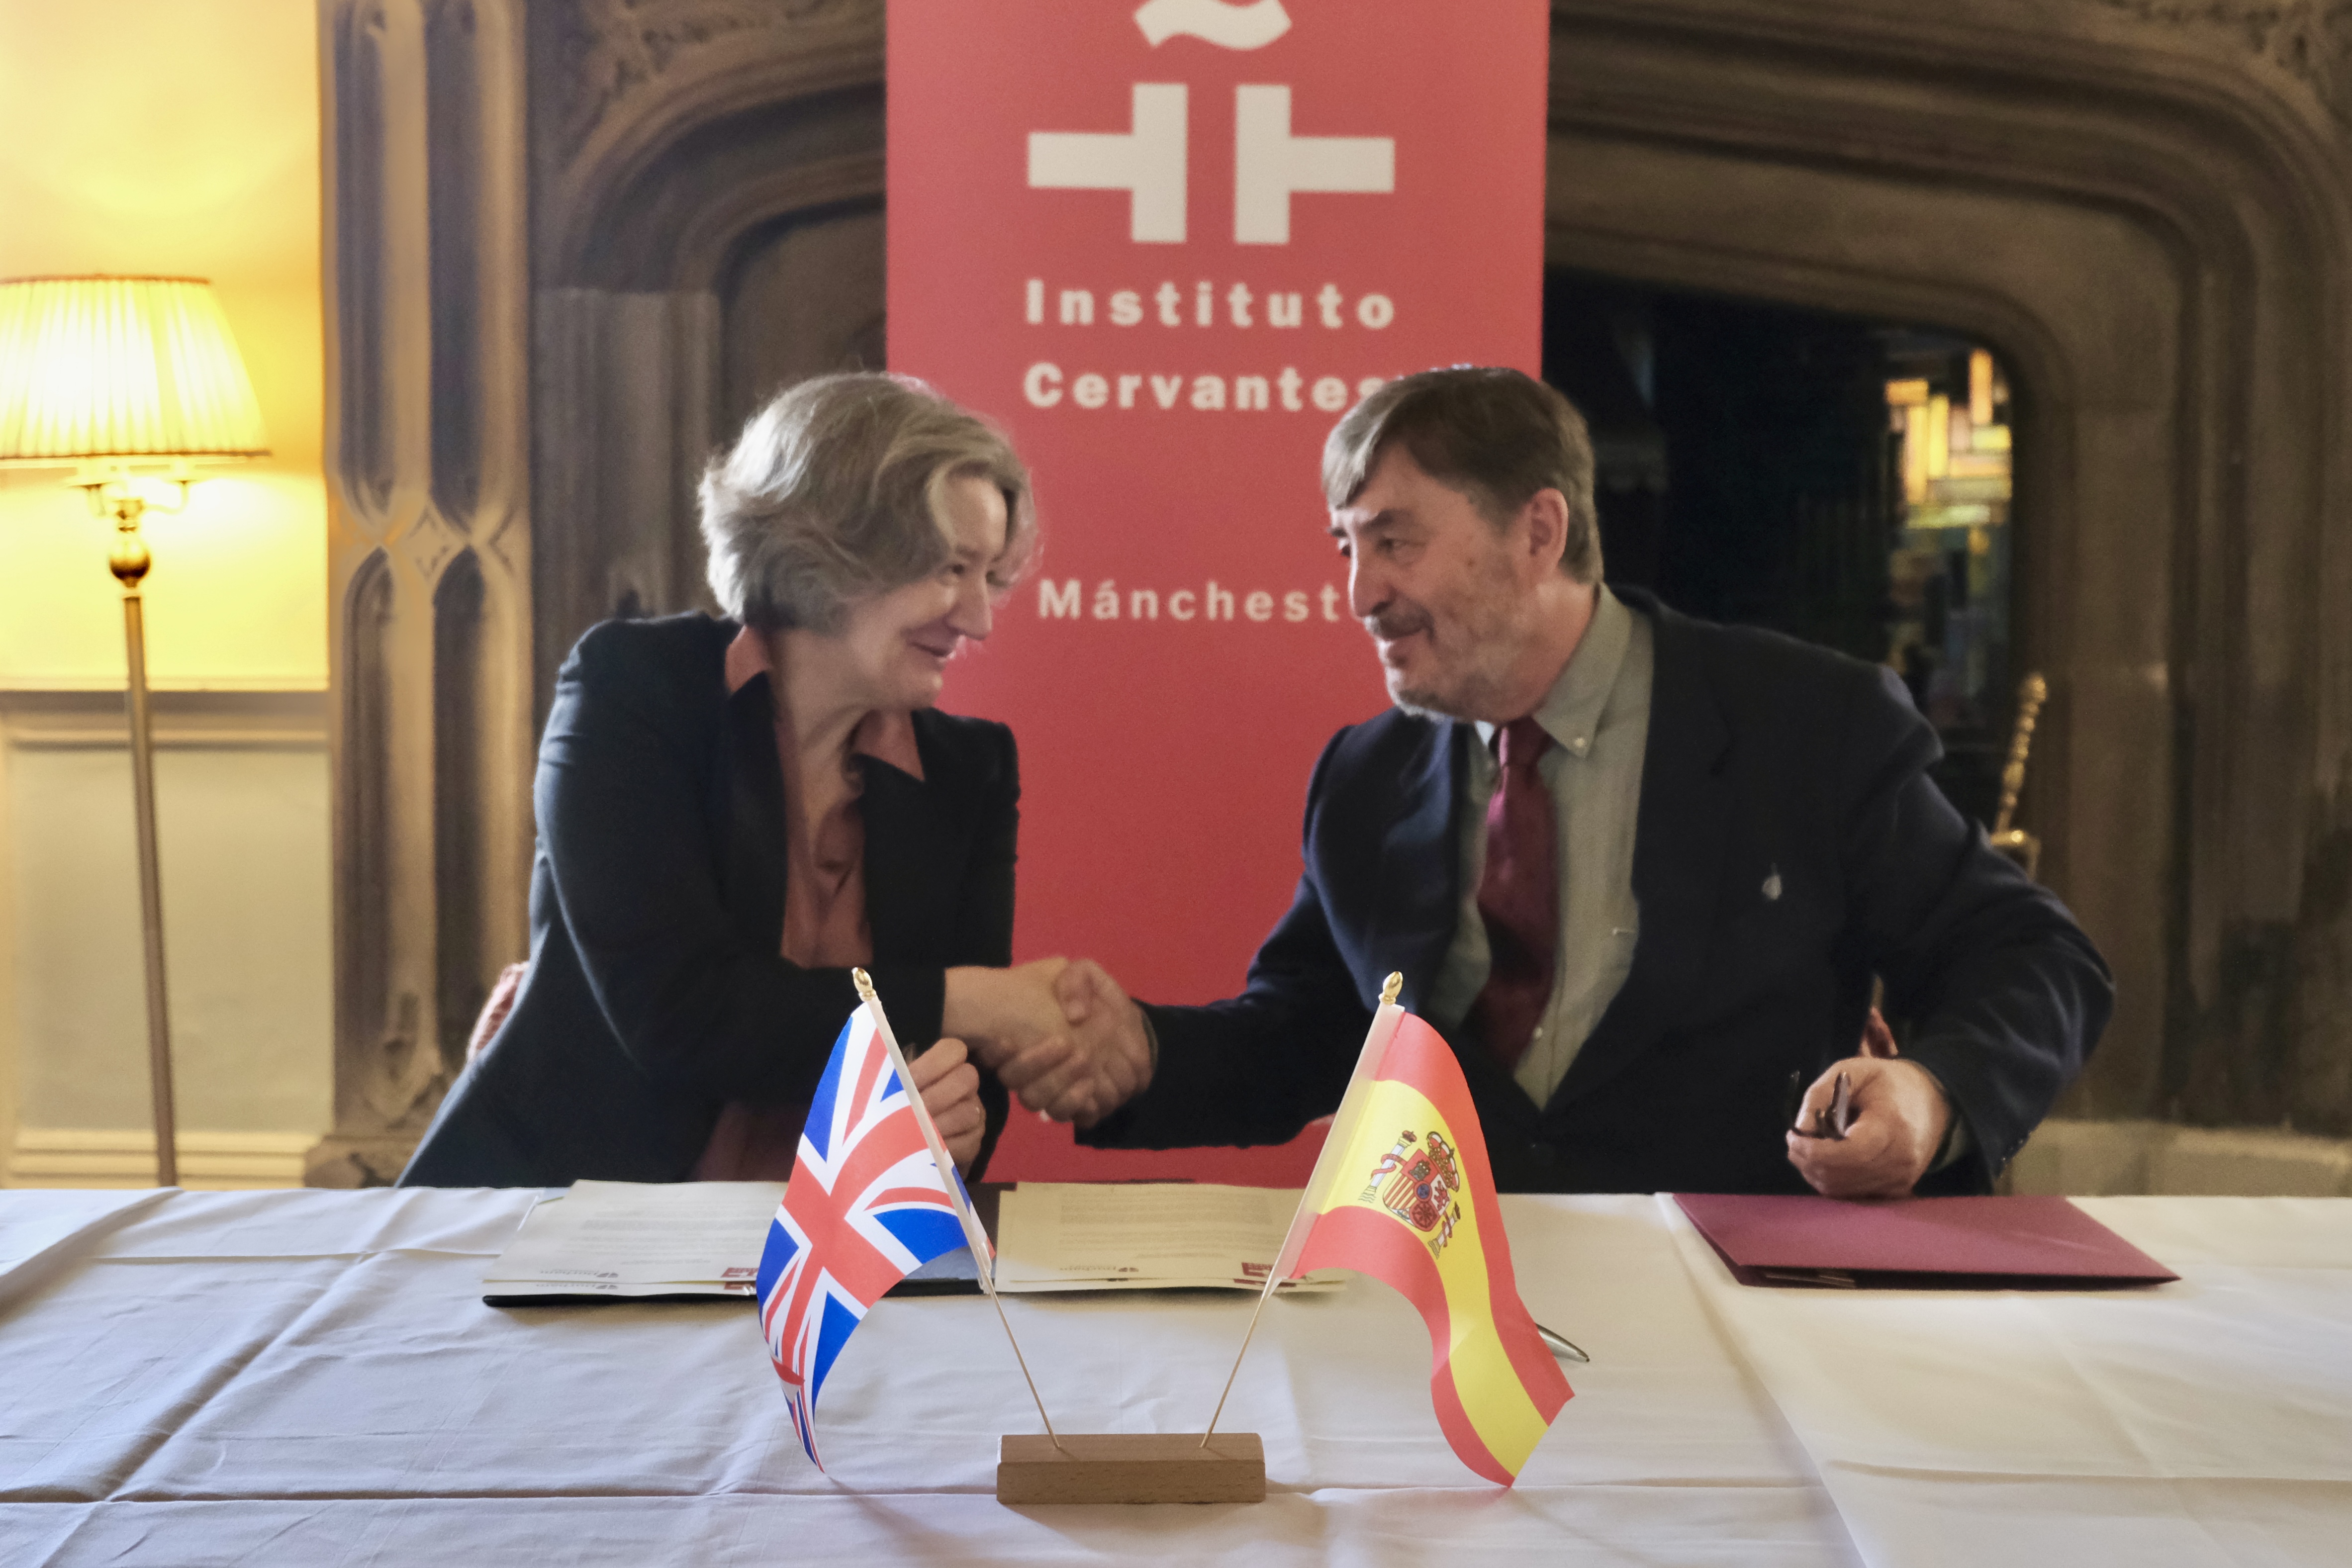 Professor Karen O'Brien and Professor Luis García Montero shaking hands after signing a MoU (Memorandum of Understanding) between Durham University and Instituto Cervantes.